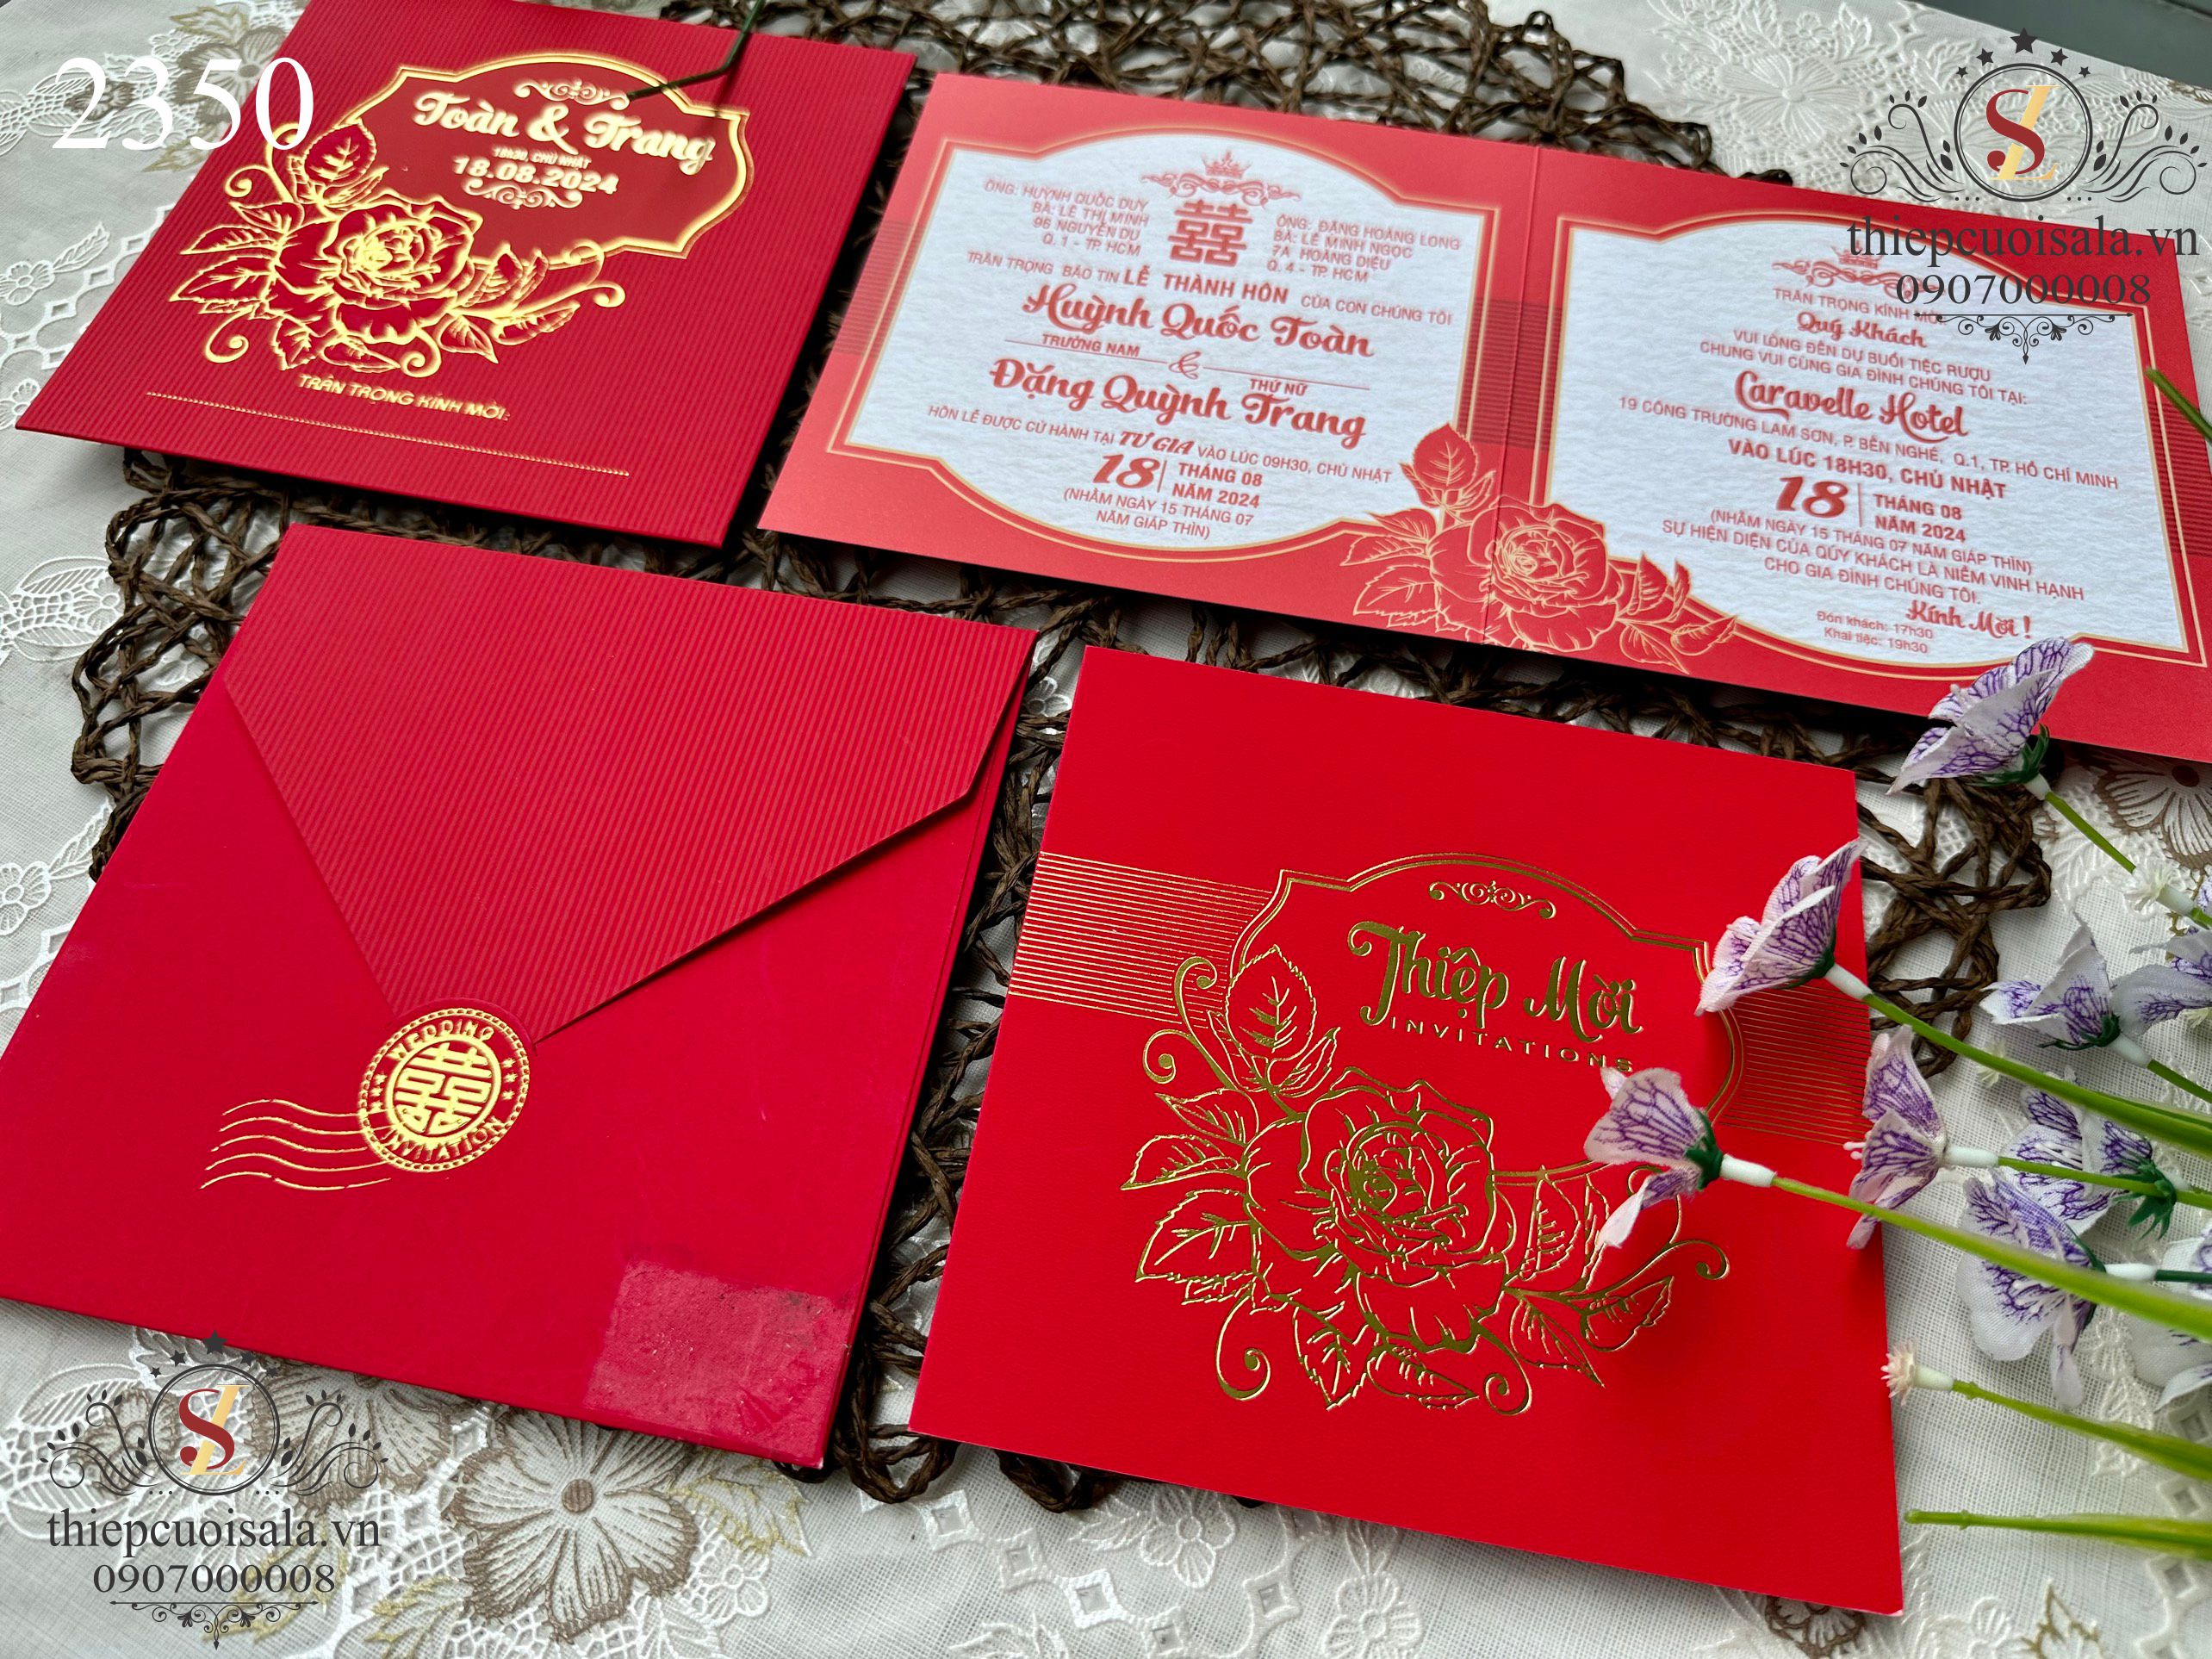 Thiệp cưới màu đỏ truyền thống 2350